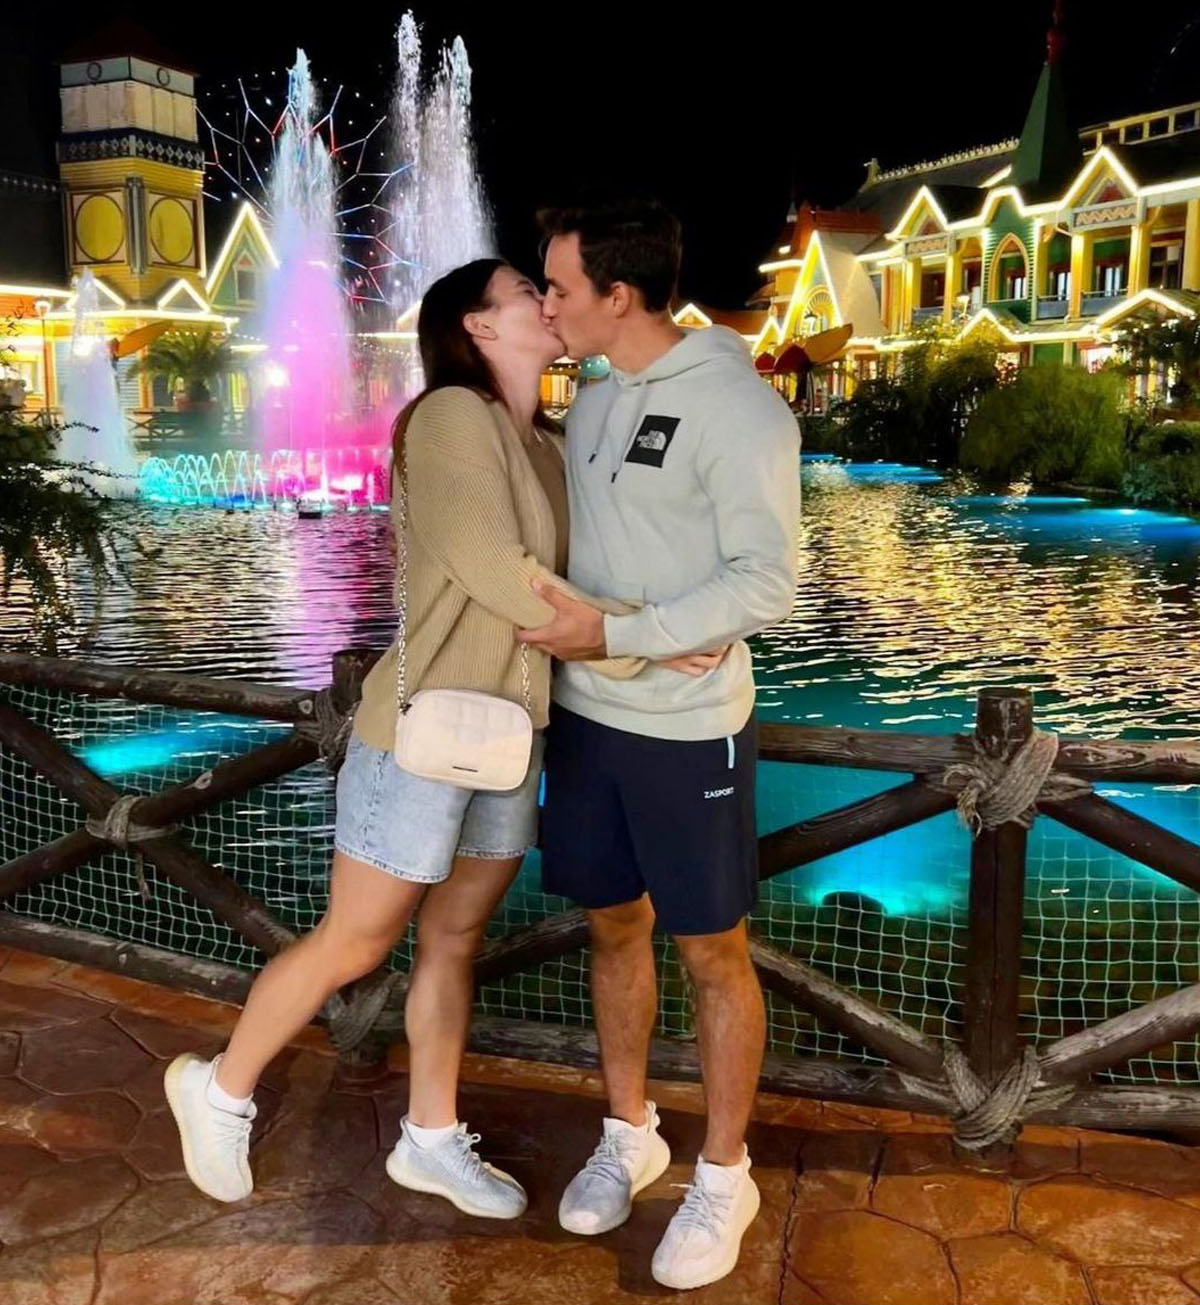 Наталья Непряева выложила в соцсети фото поцелуя с партнером по сборной России